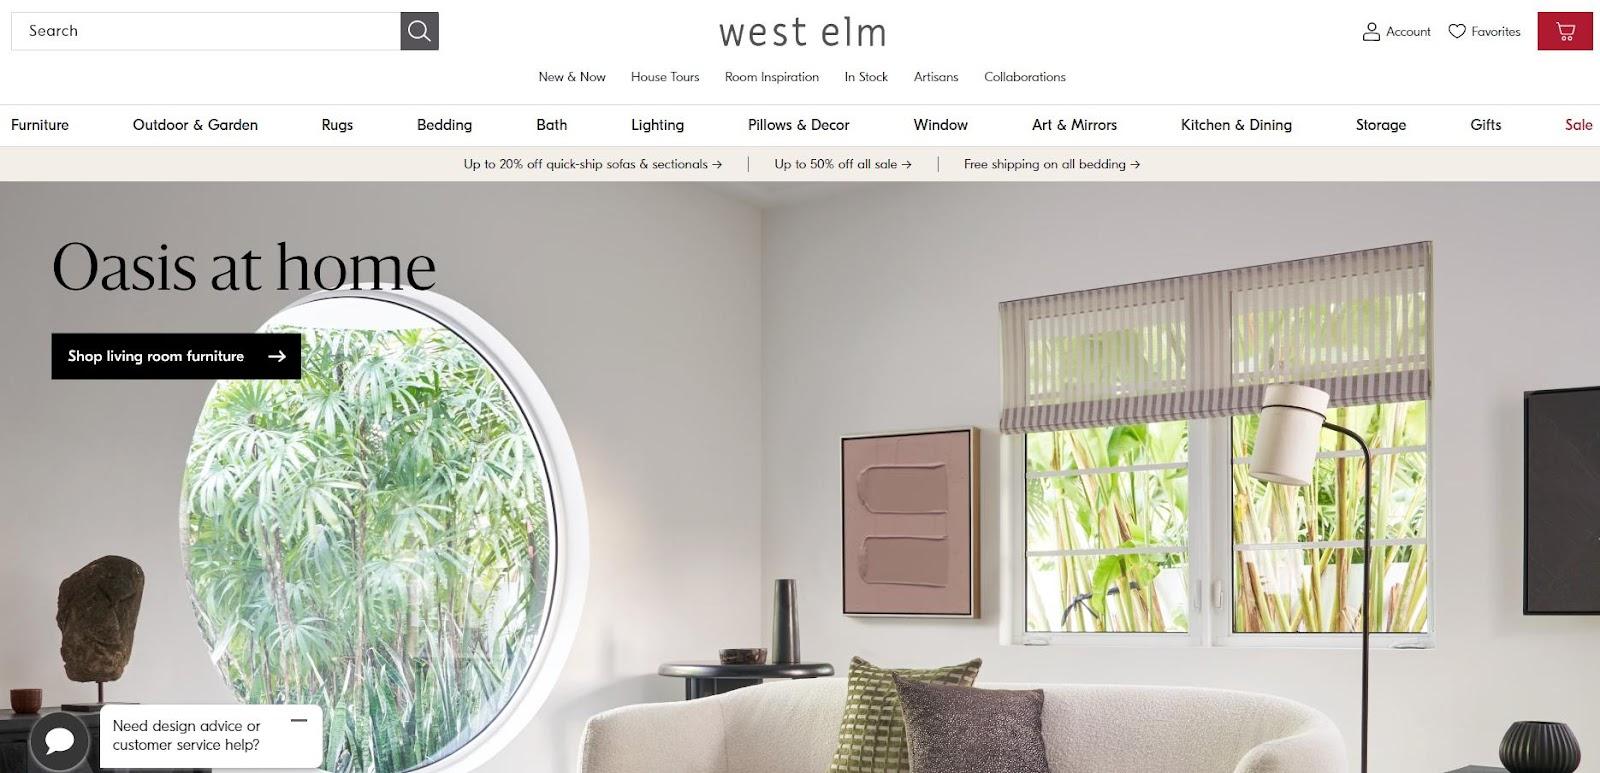 west elm best websites for furniture